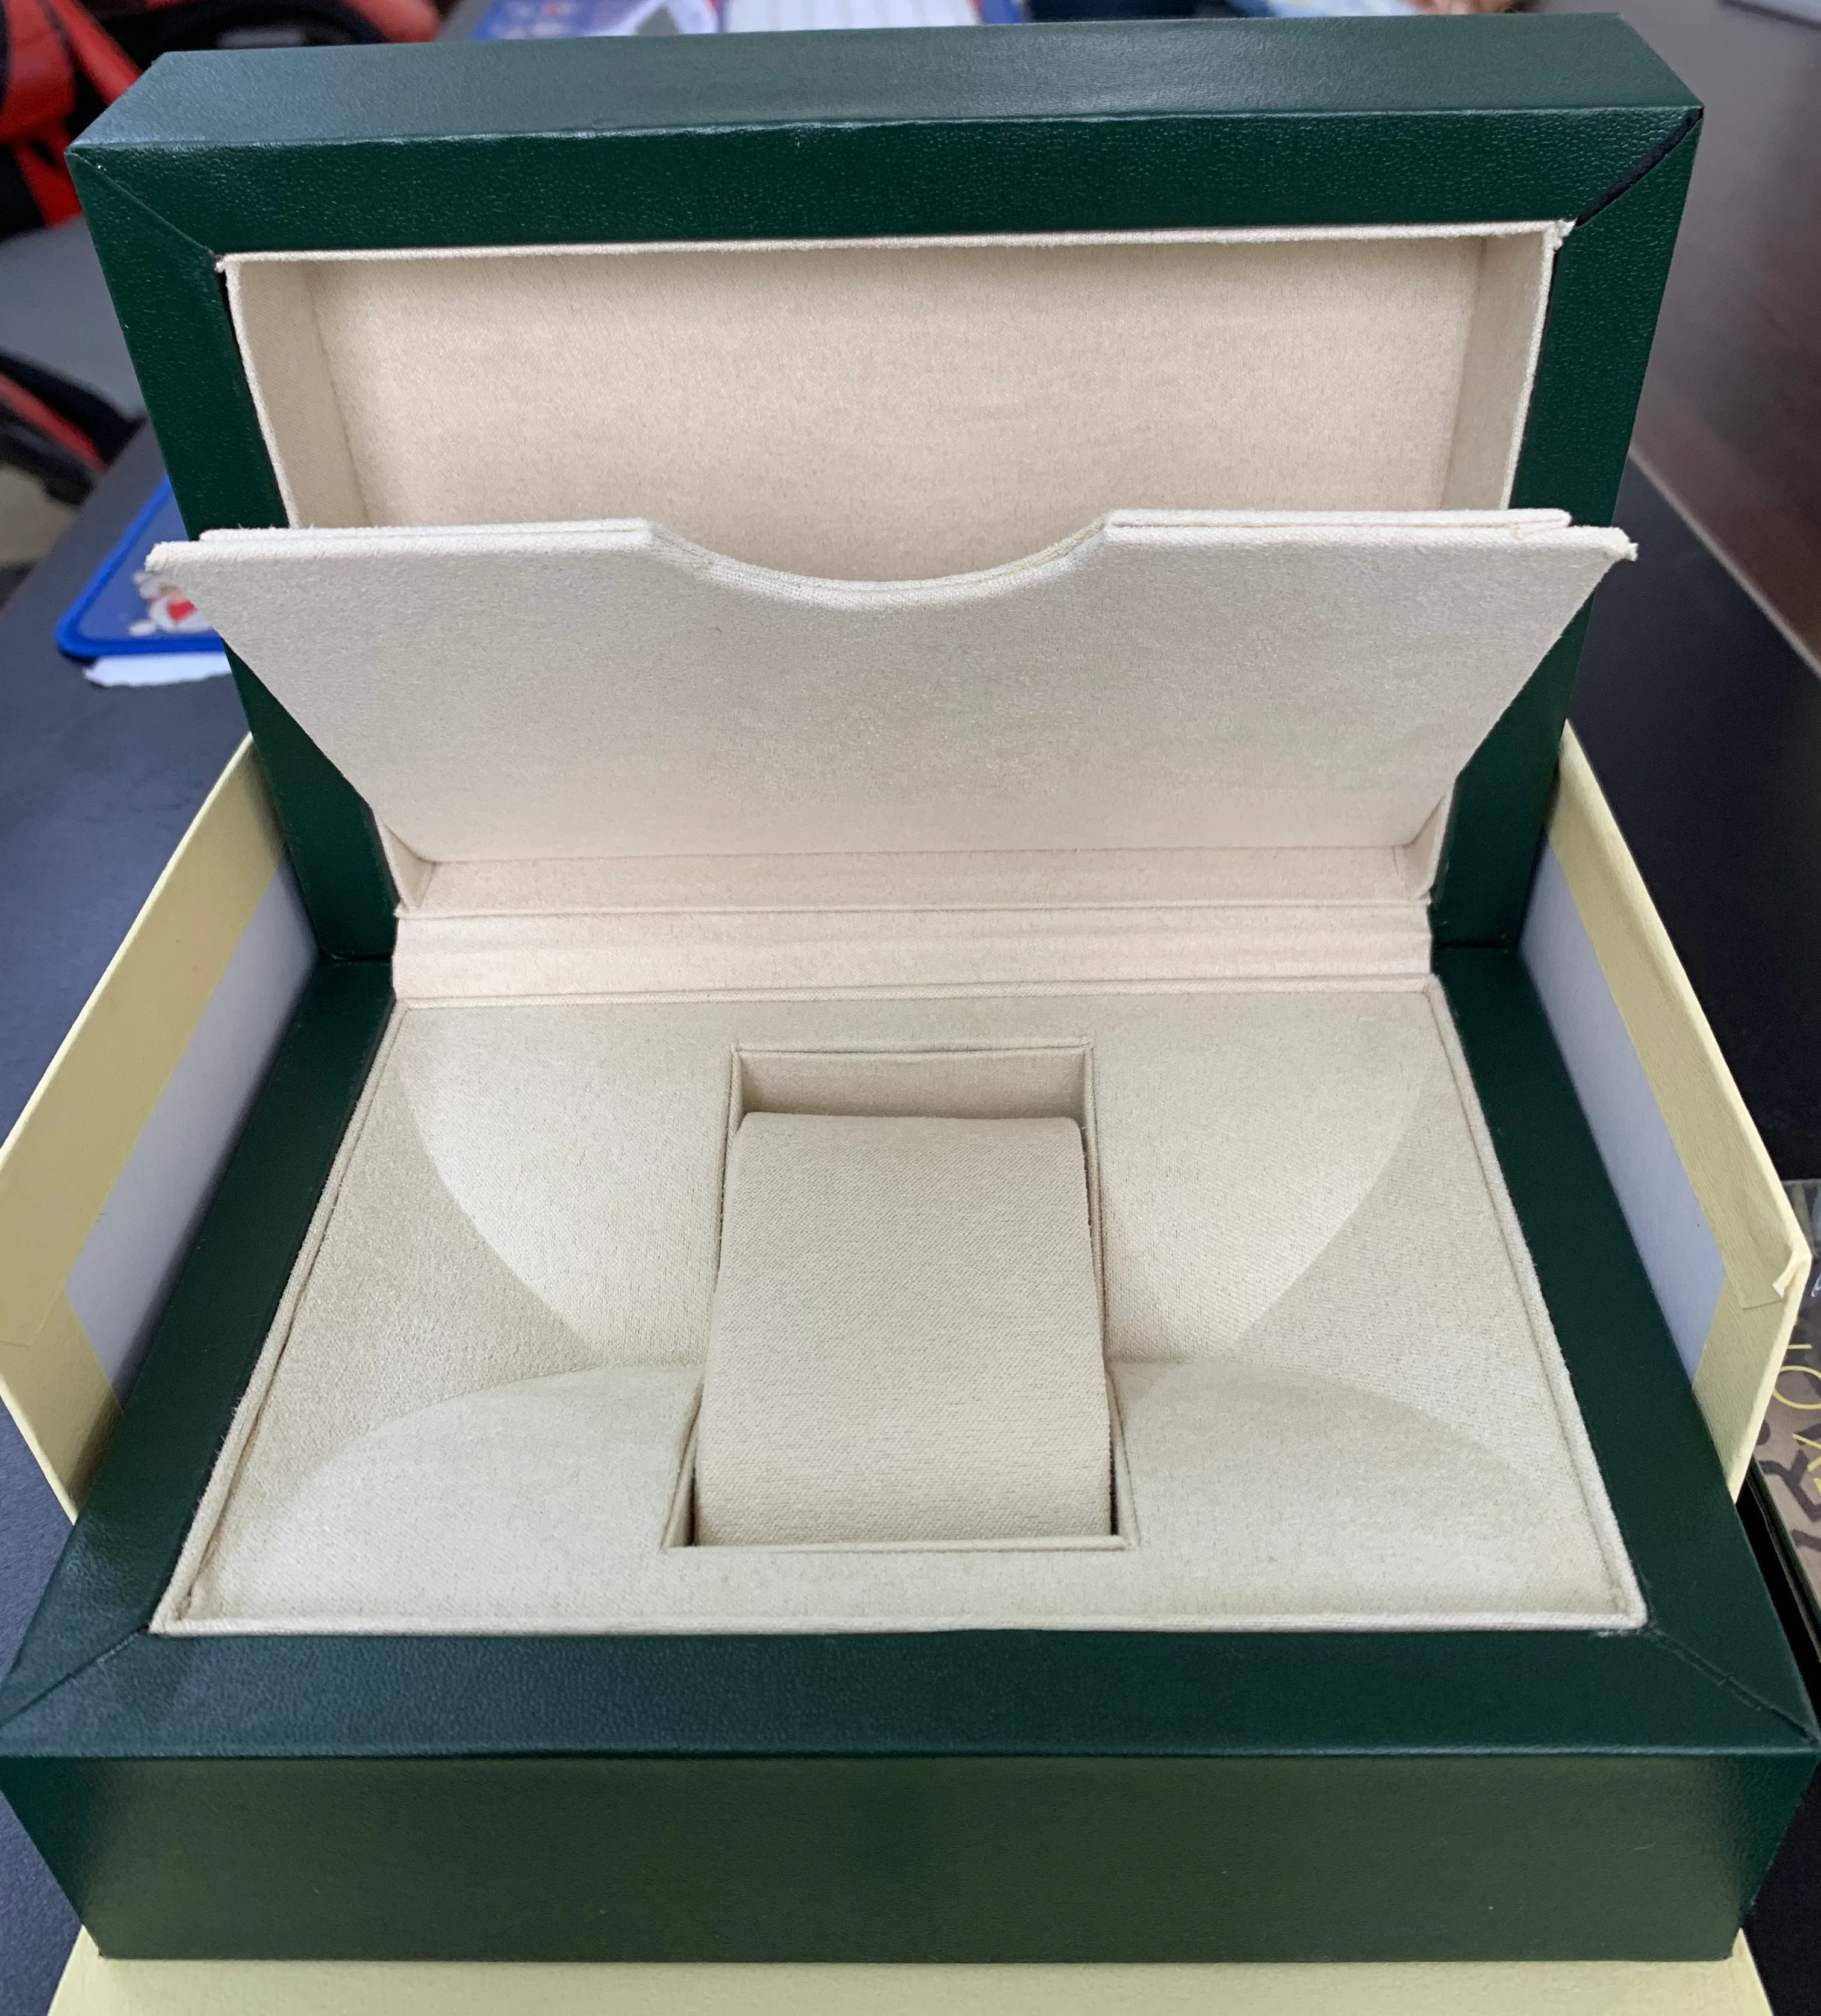 Uhrenaufbewahrungsbox-Zubehör in Grün von Top-Marken wird nicht separat verkauft, sondern muss zusammen mit der Uhr bestellt werden. Bitte haben Sie Verständnis